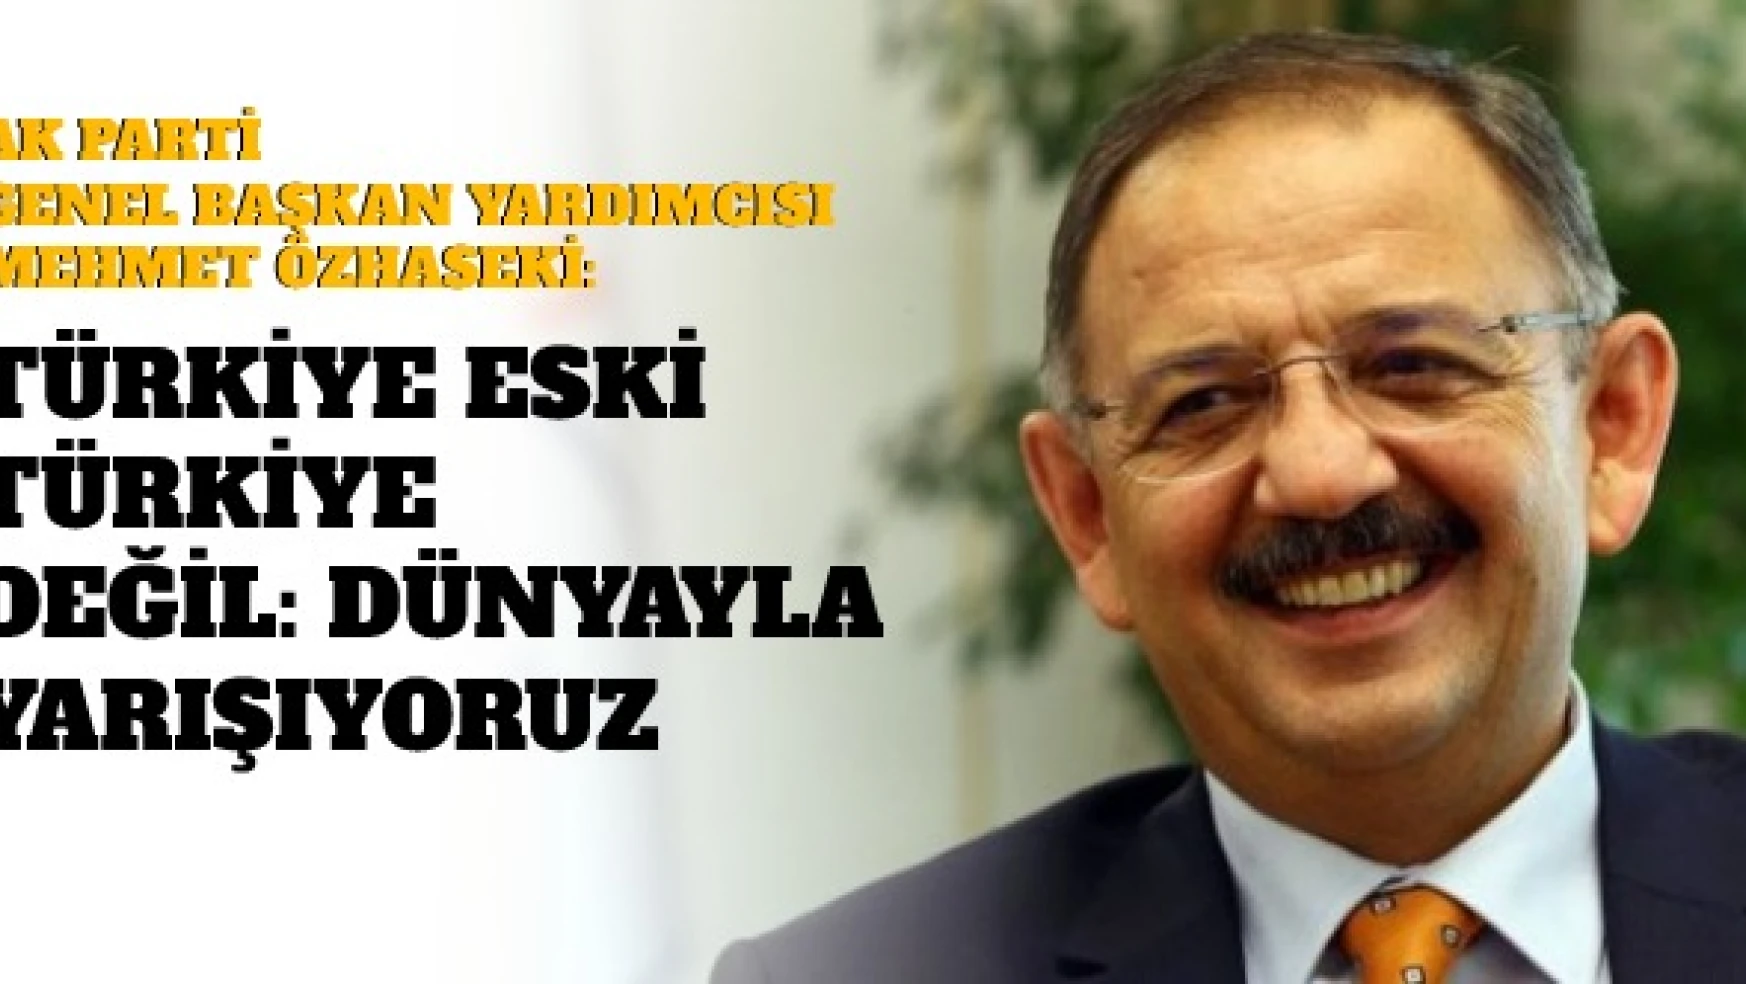 Özhaseki: "Türkiye eski Türkiye değil: dünyayla yarışıyoruz "